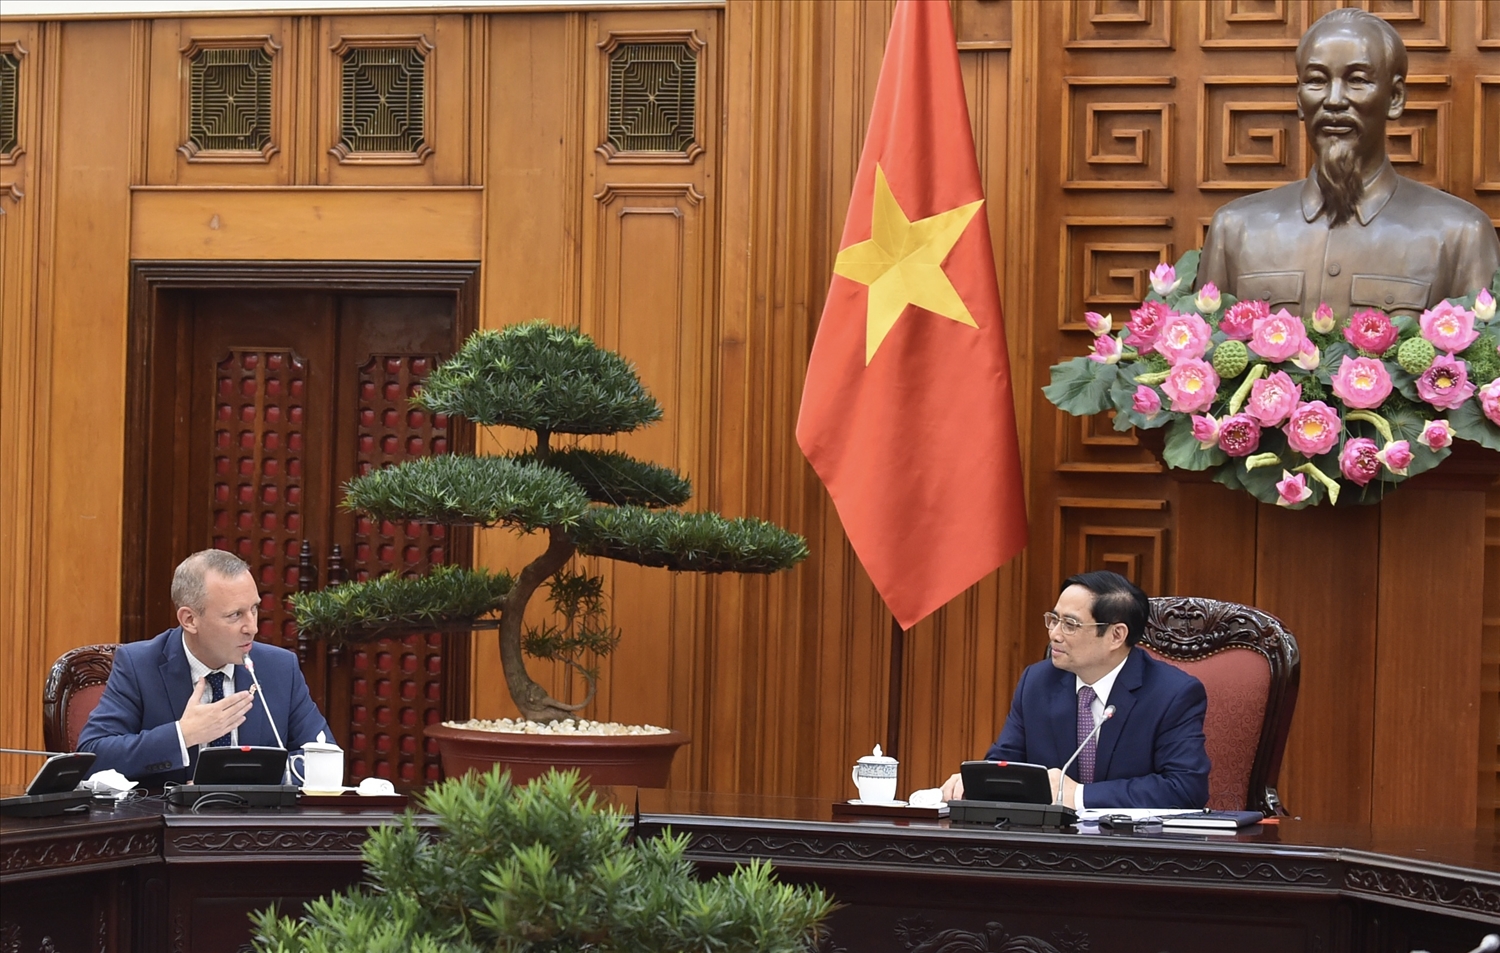 Đại sứ Anh Gareth Ward nhấn mạnh Chính phủ Anh coi Việt Nam là đối tác quan trọng ở khu vực. Ảnh: VGP/Nhật Bắc